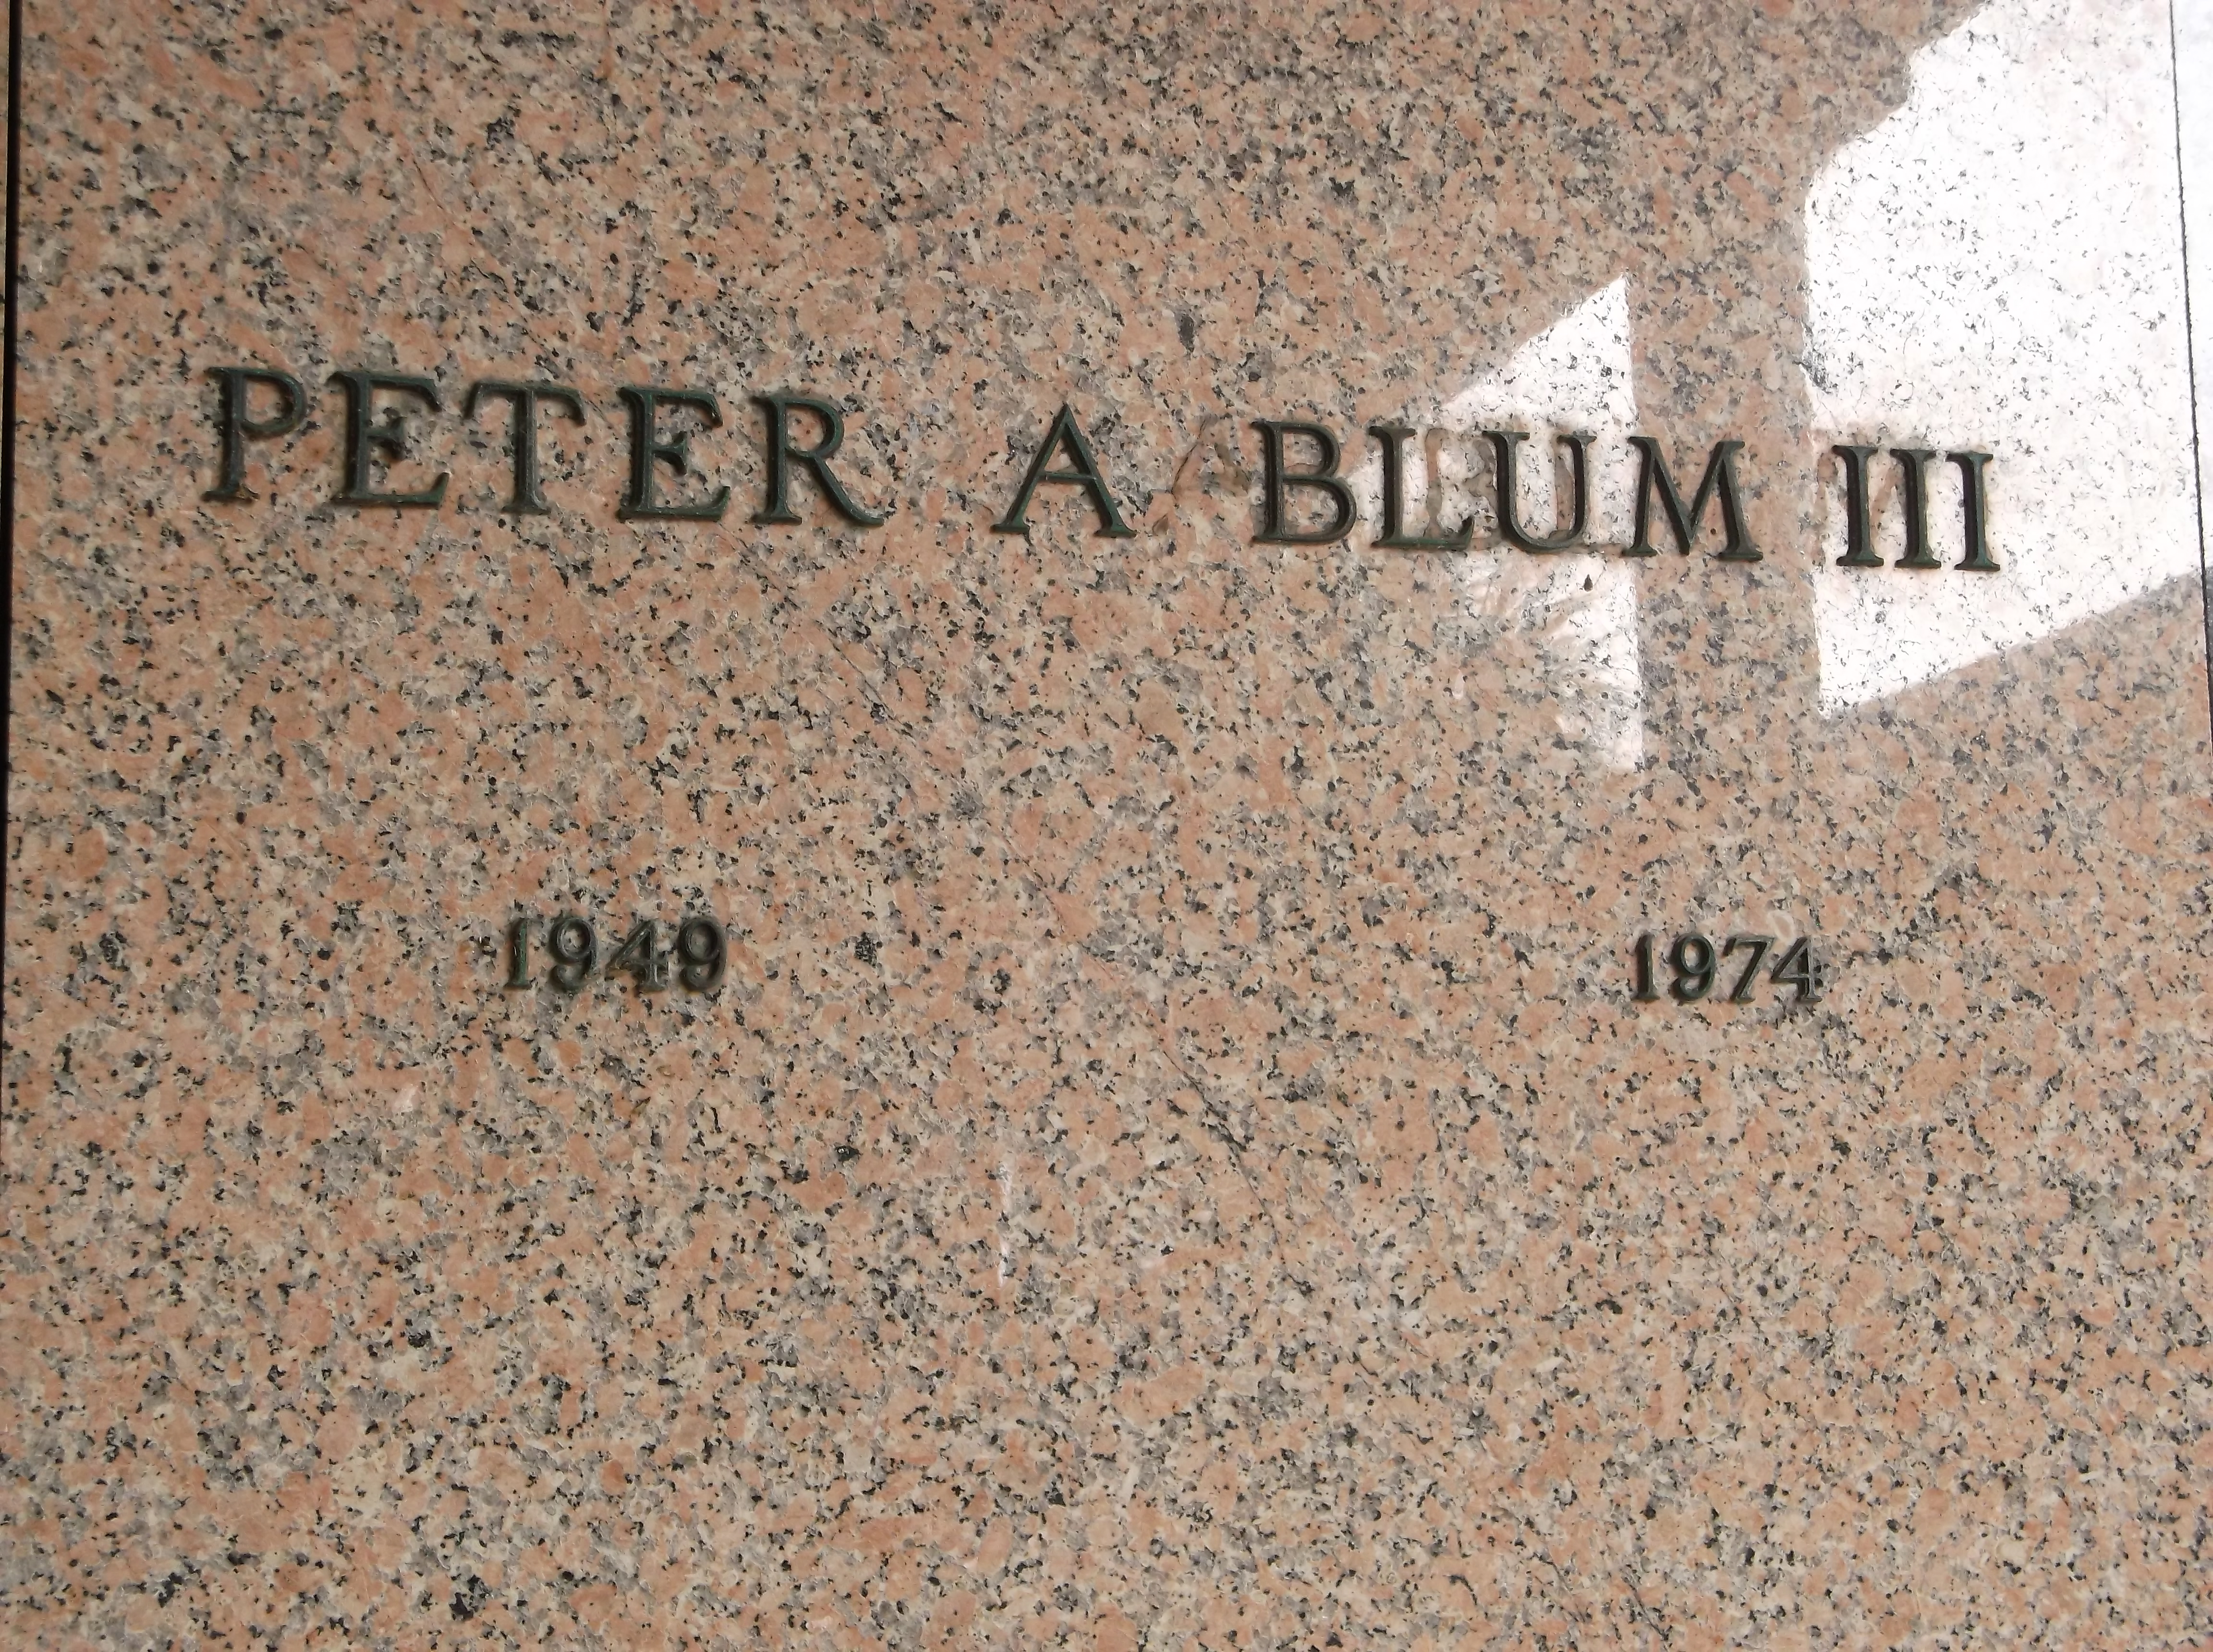 Peter A Blum, III